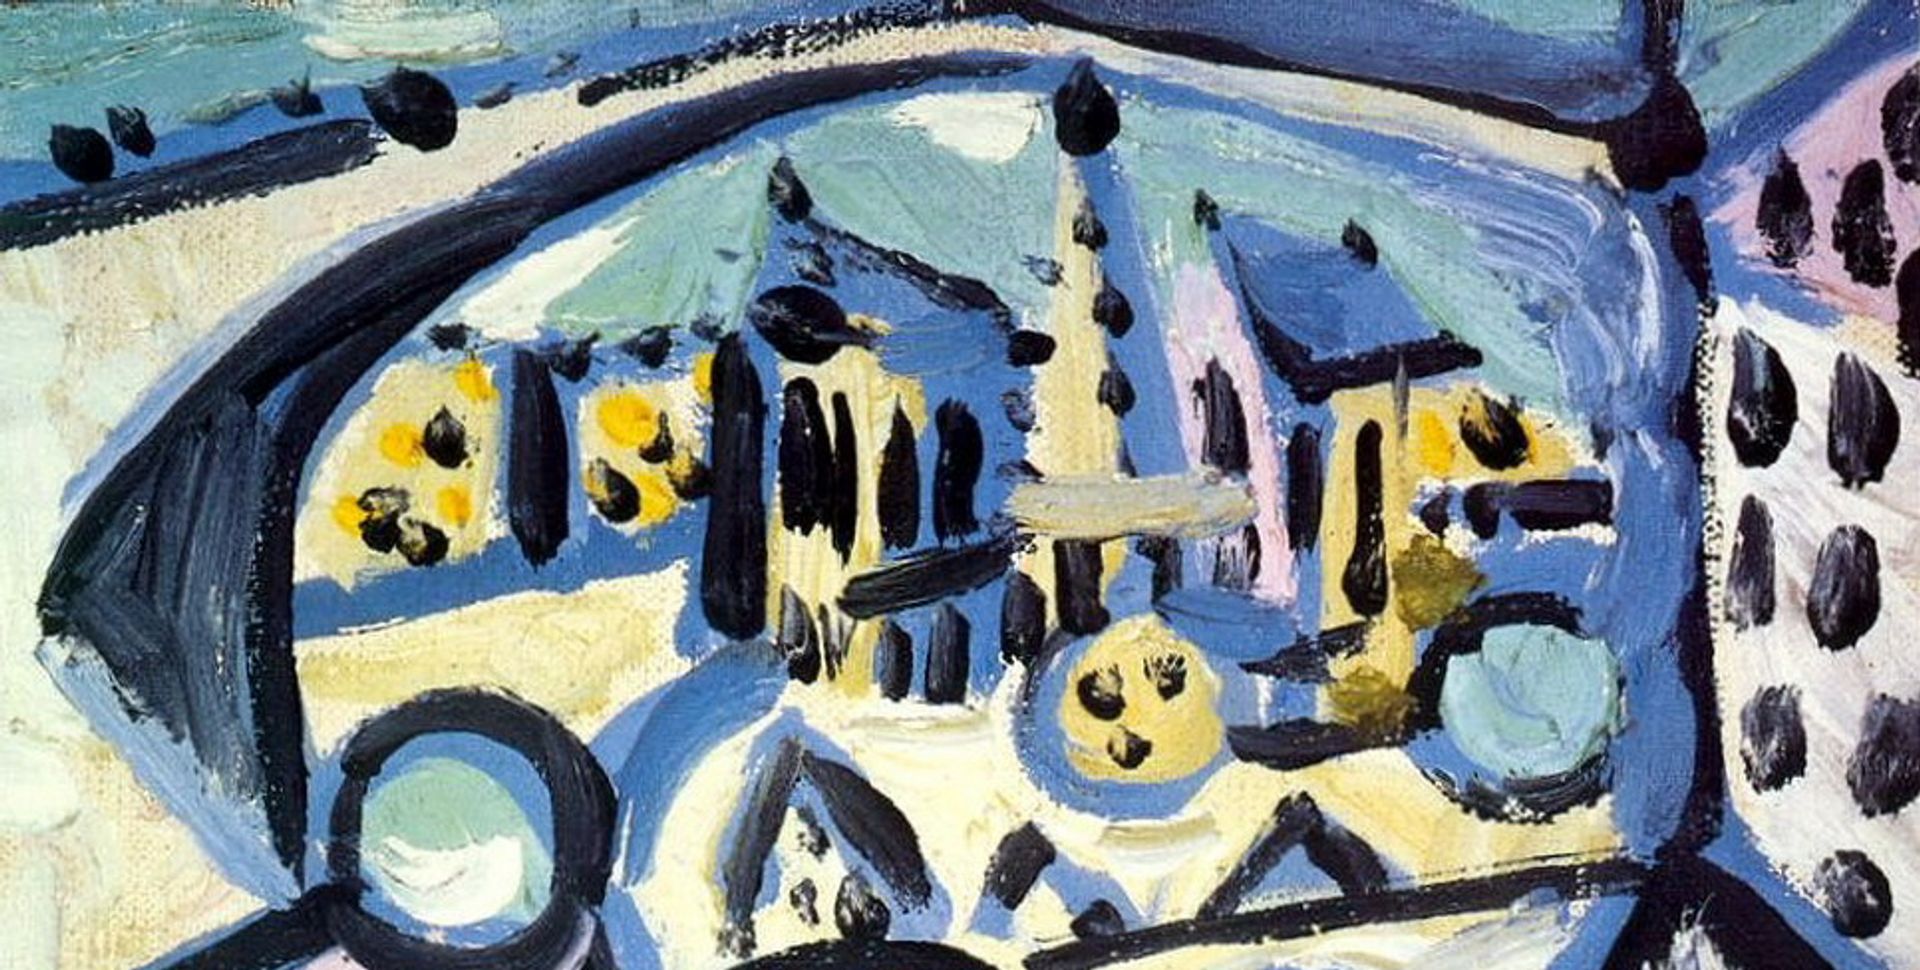 Pablo Picasso’s Vue de Notre-Dame de Paris - le de la Cite (1945) Pablo Picasso’s Vue de Notre-Dame de Paris - le de la Cite (1945)